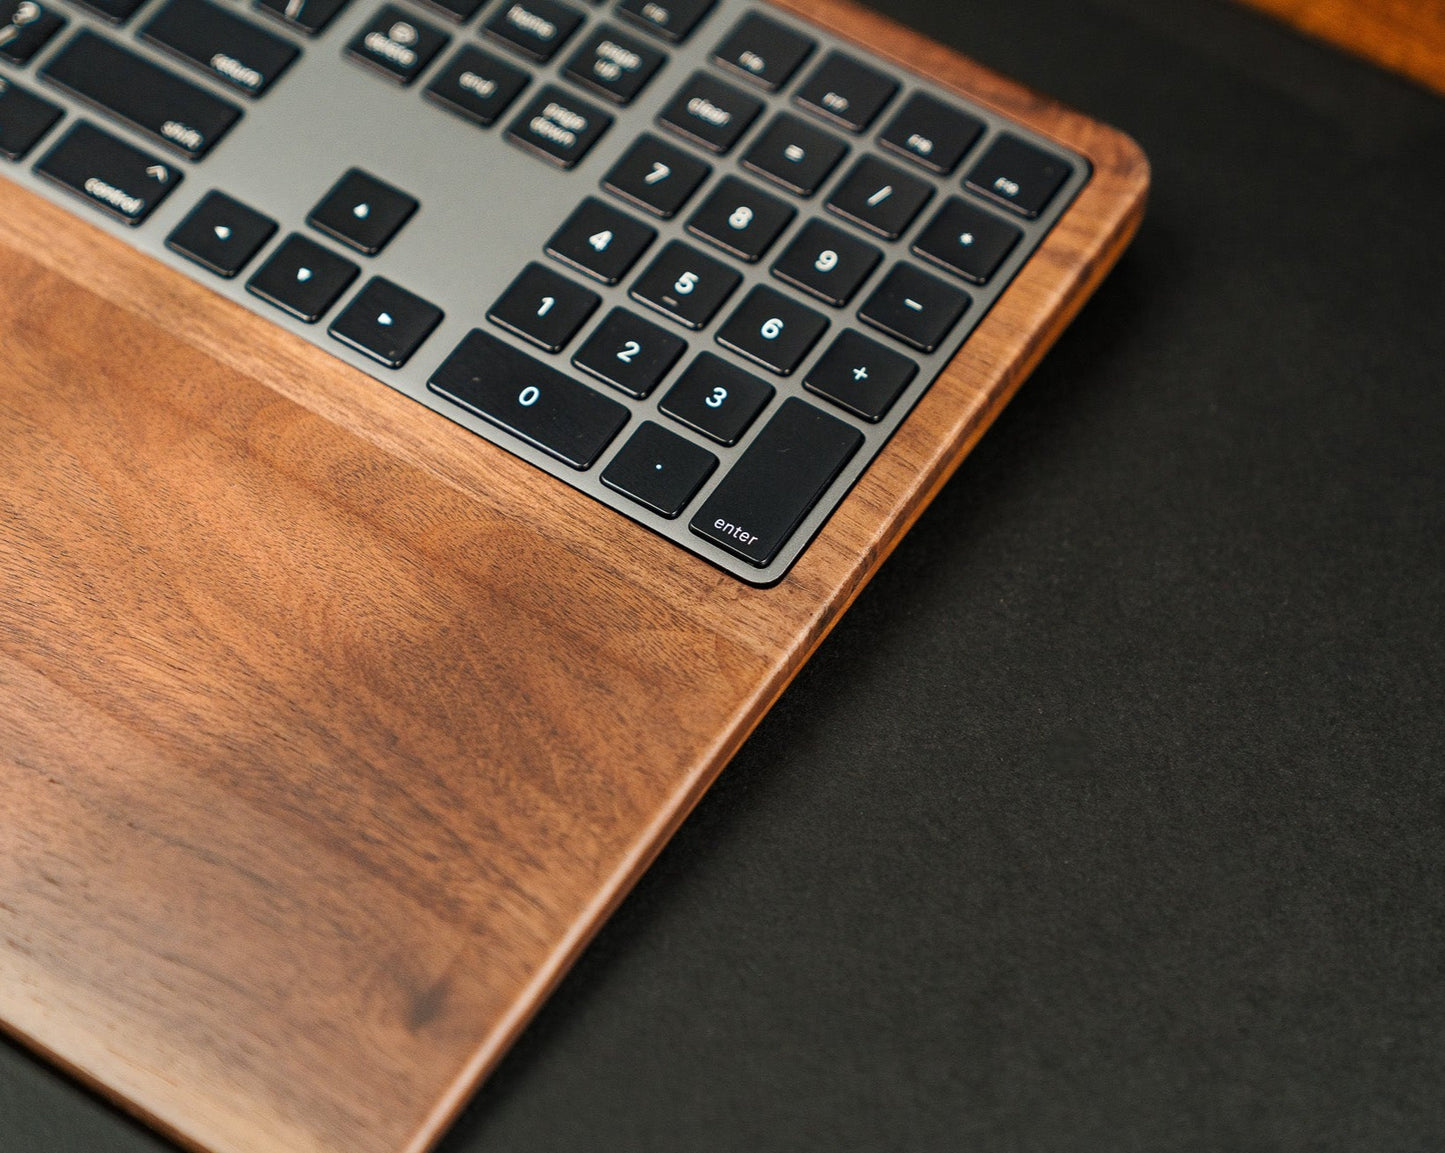 The Pro Magic Walnut Keyboard and Trackpad Tray